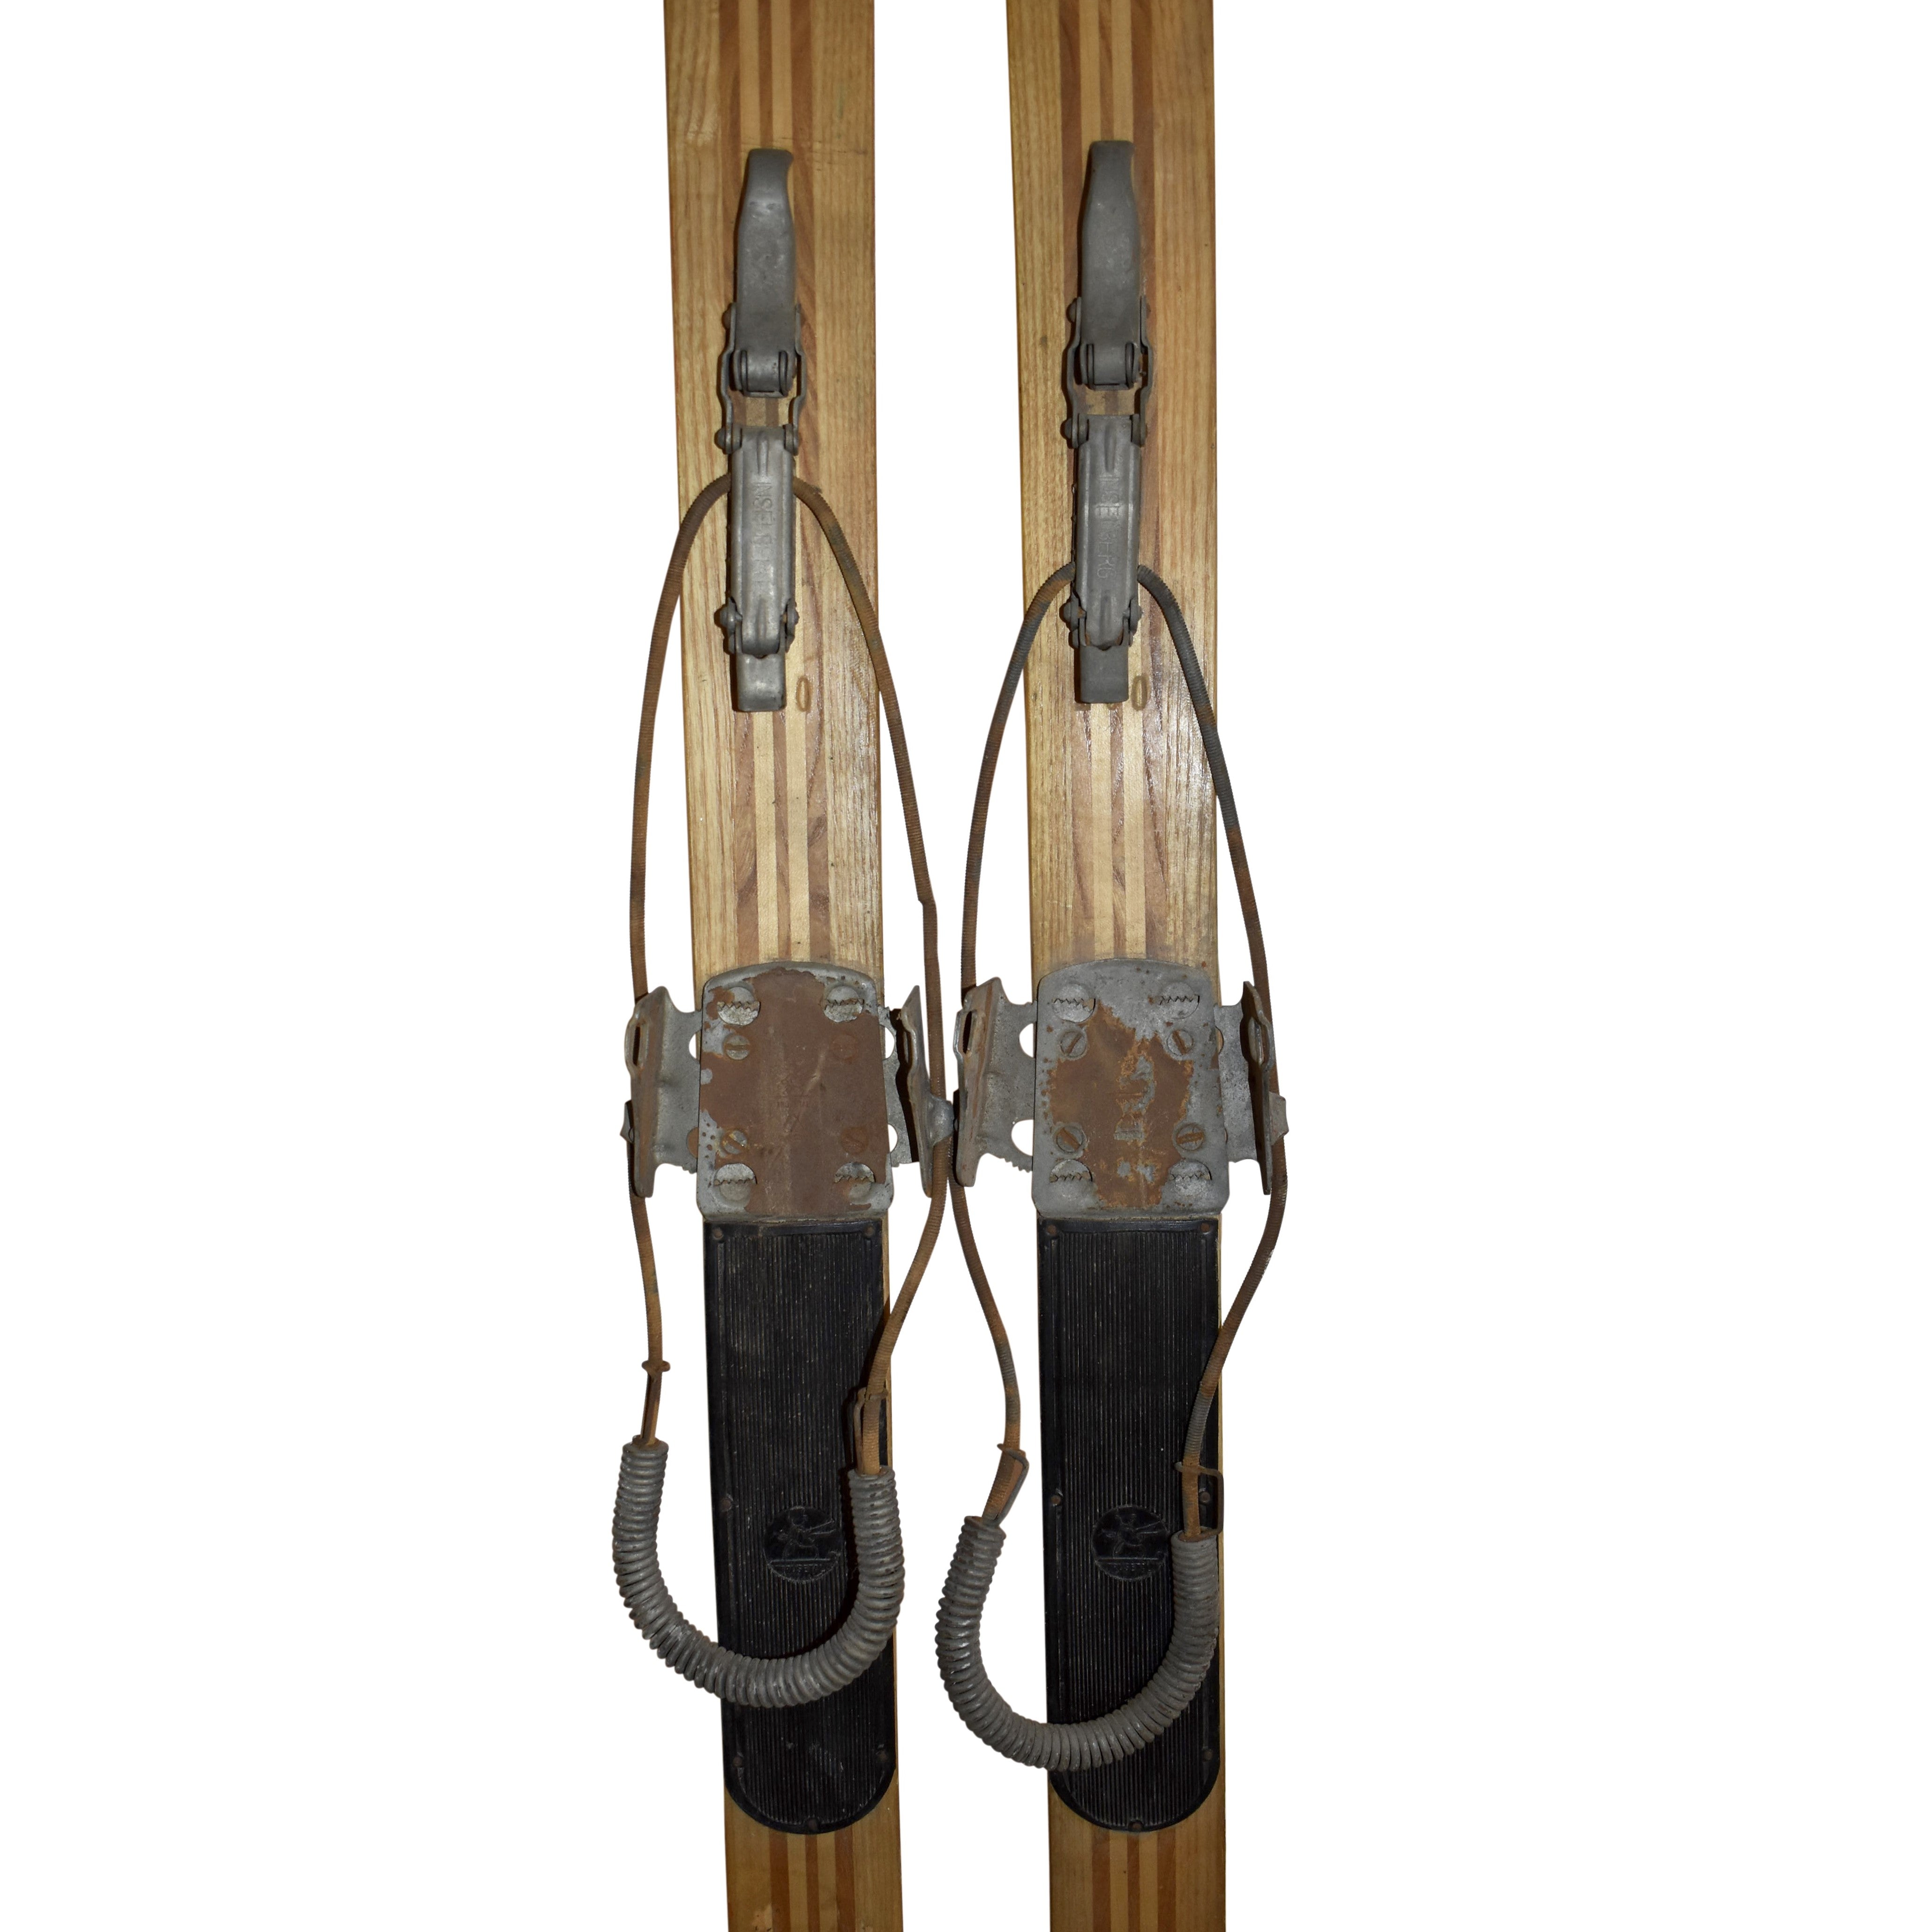 German Reinker Skis with Inselberg Cable Bindings